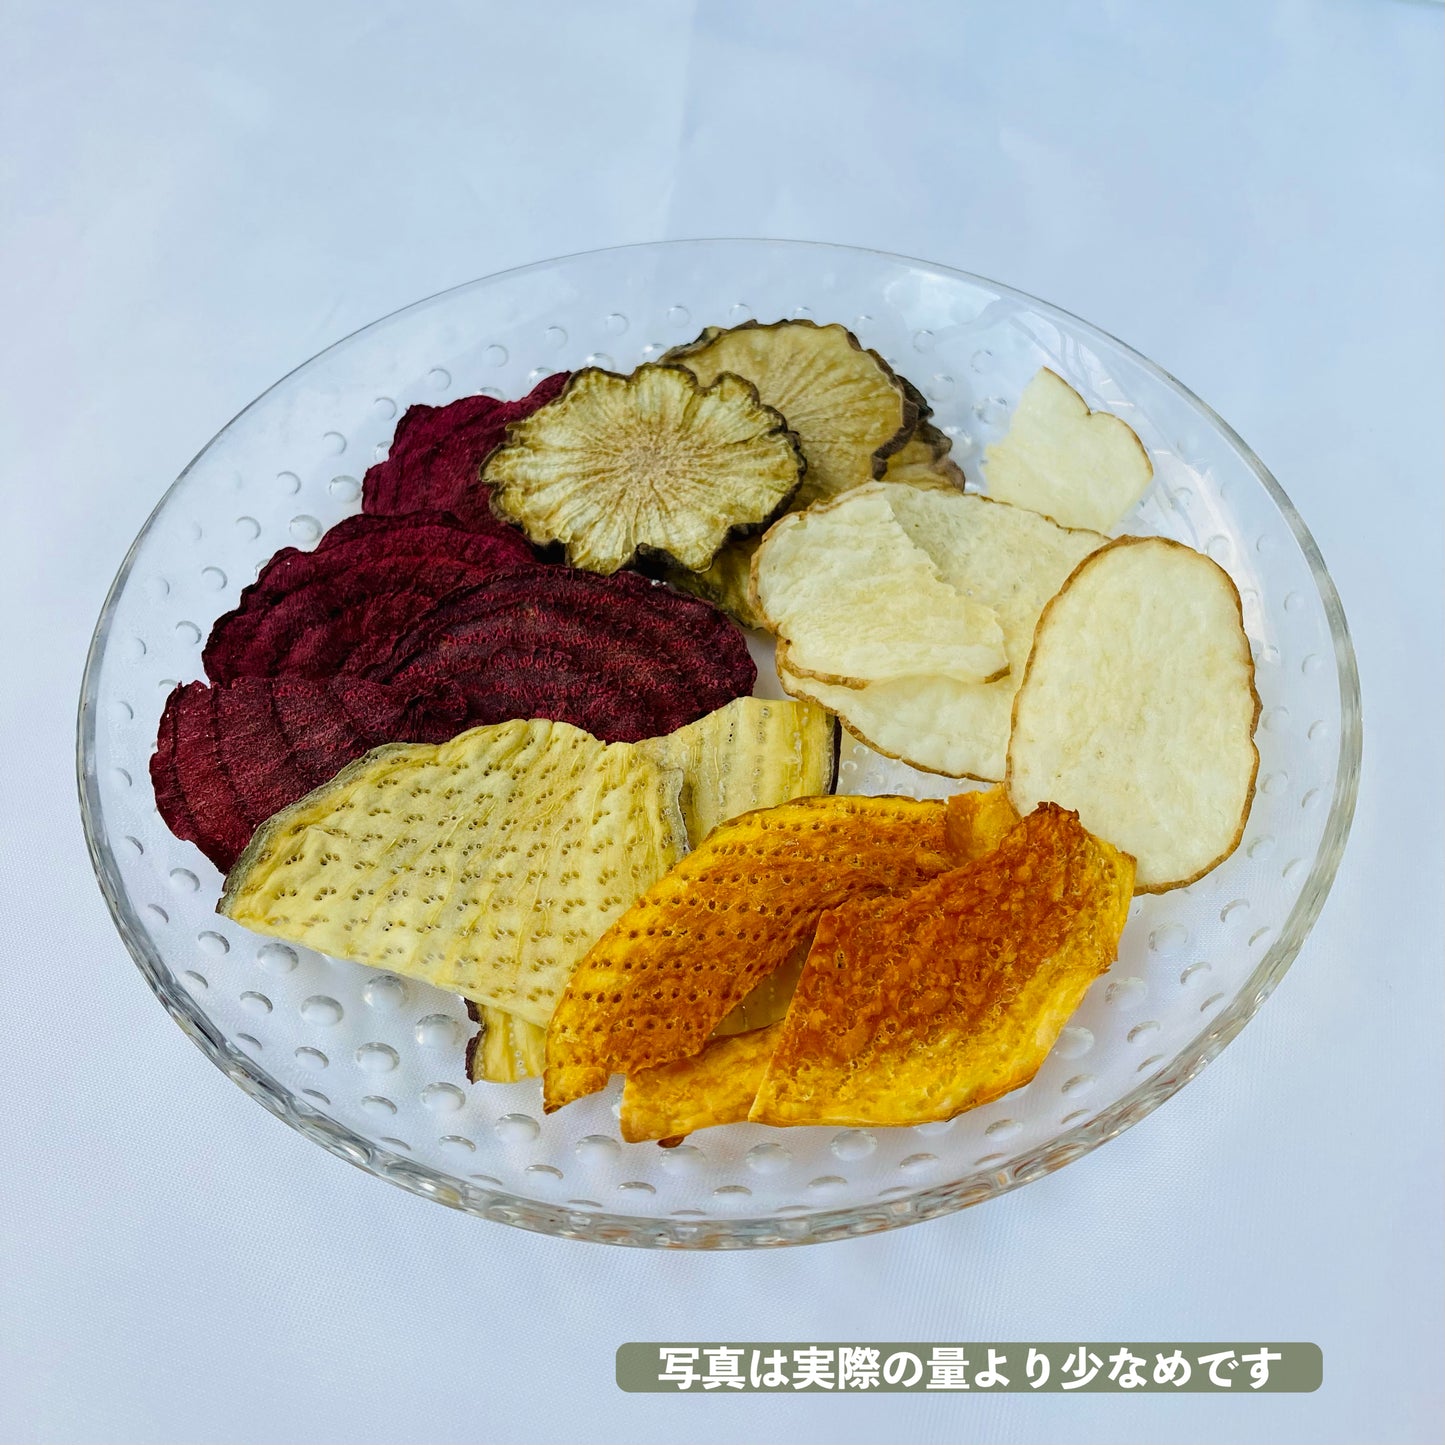 【日本初の素焼き製法】SUYAKKIベジタブルミックス/30g(じゃがいも、紅はるか、ビーツ、ヤーコン、オクラ）*中身は季節変動あり